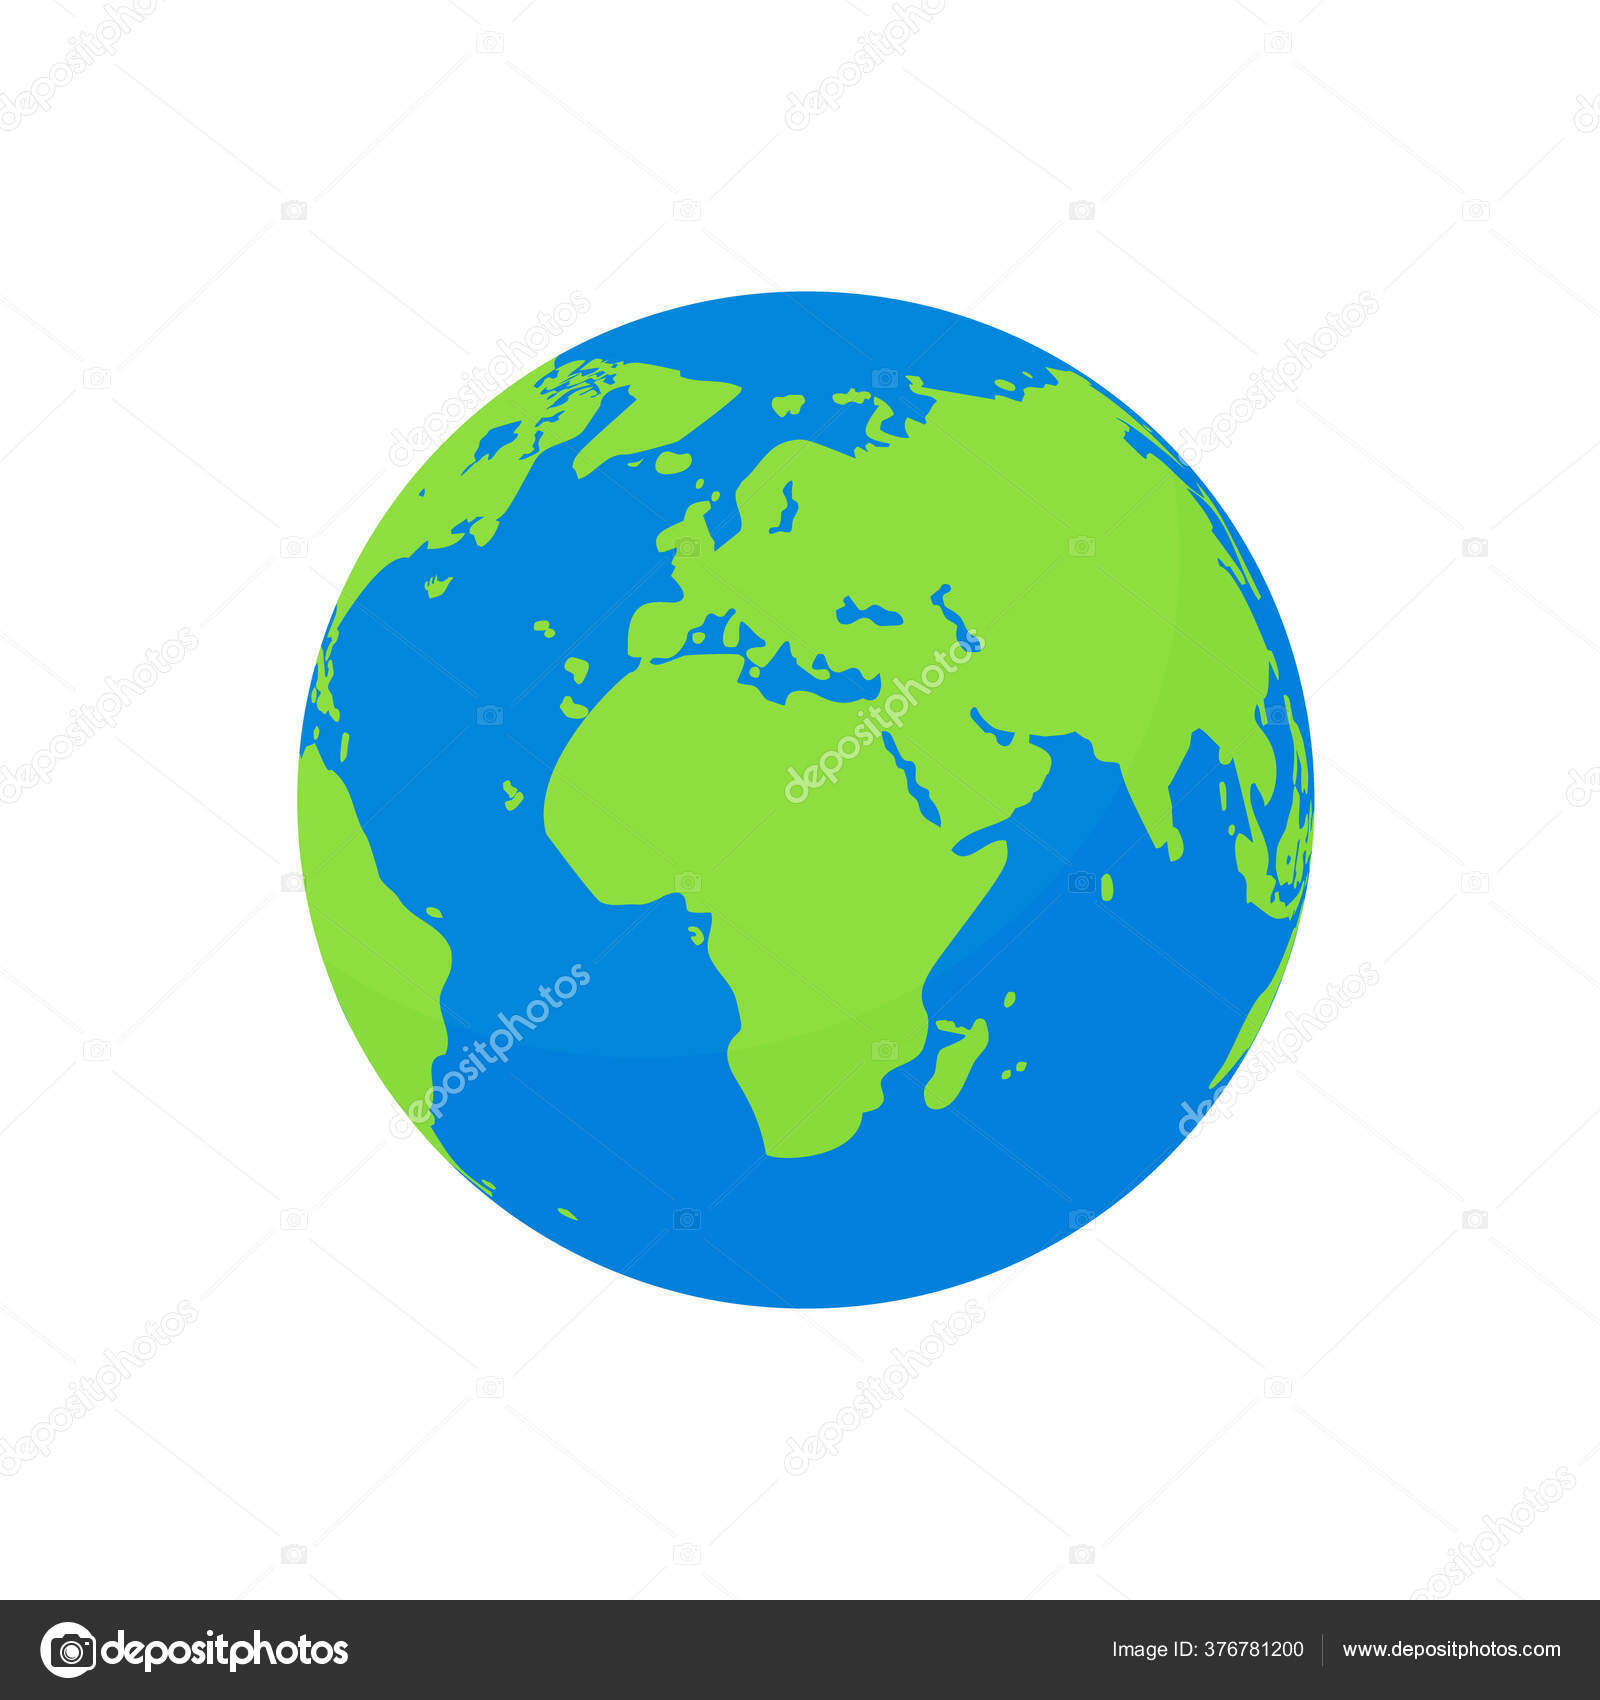 平らな地球の地球は孤立した ヨーロッパ大陸 アメリカ 青い海を持つ漫画の世界の惑星 生態学の概念 円球上の自然地理 旅行のための簡単な地図 緑の大地 ベクトル ストックベクター C Rimm Art